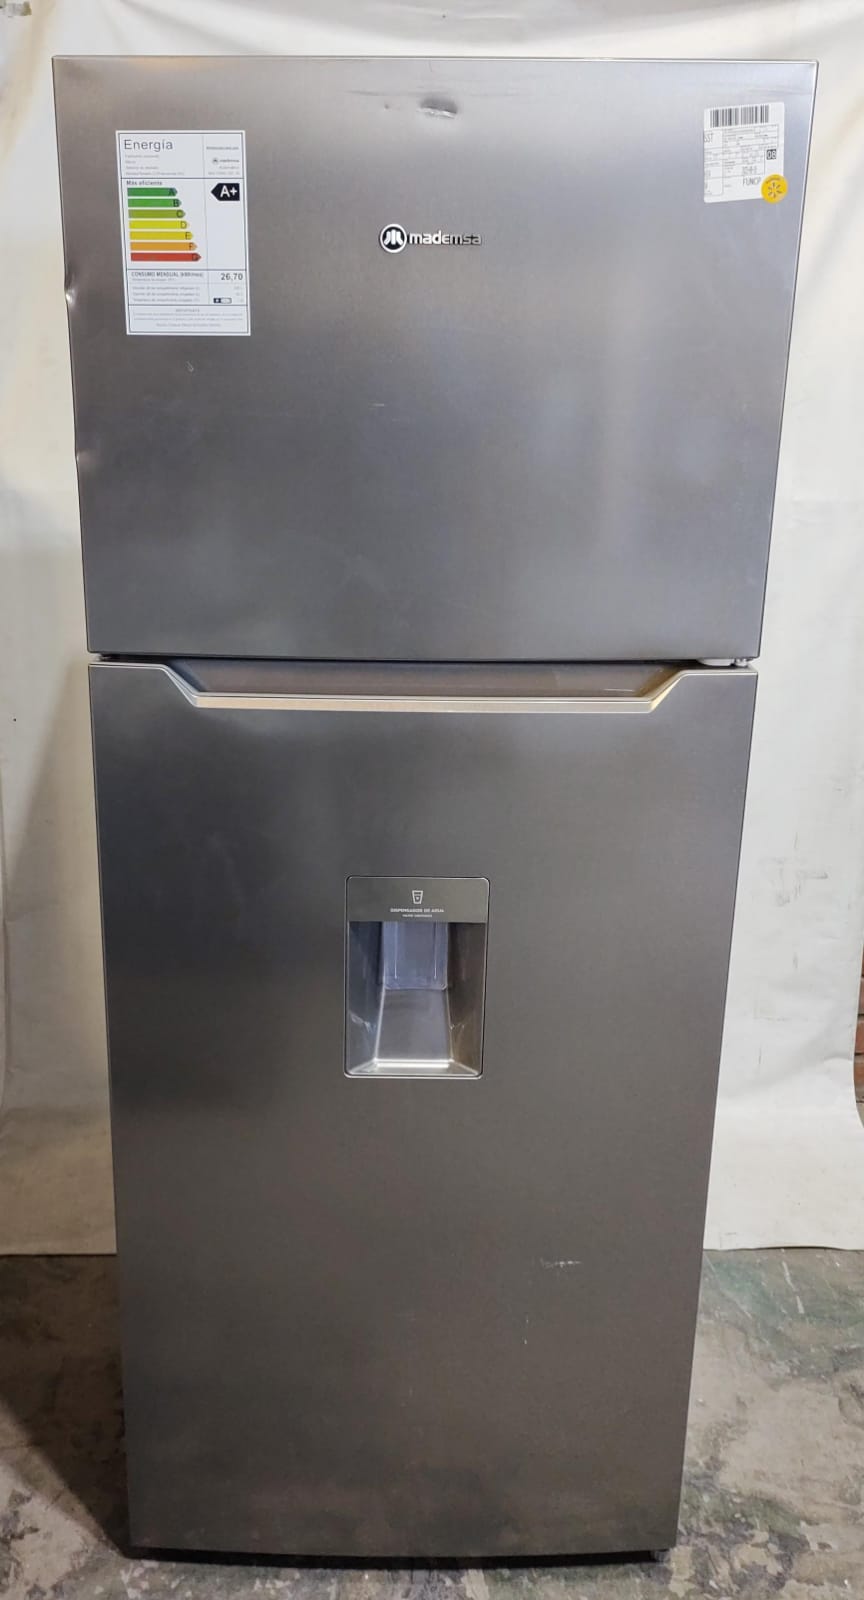 Refrigerador no frost 425 litros altus 1430w mademsa (Enchufe raspado) [Openbox]